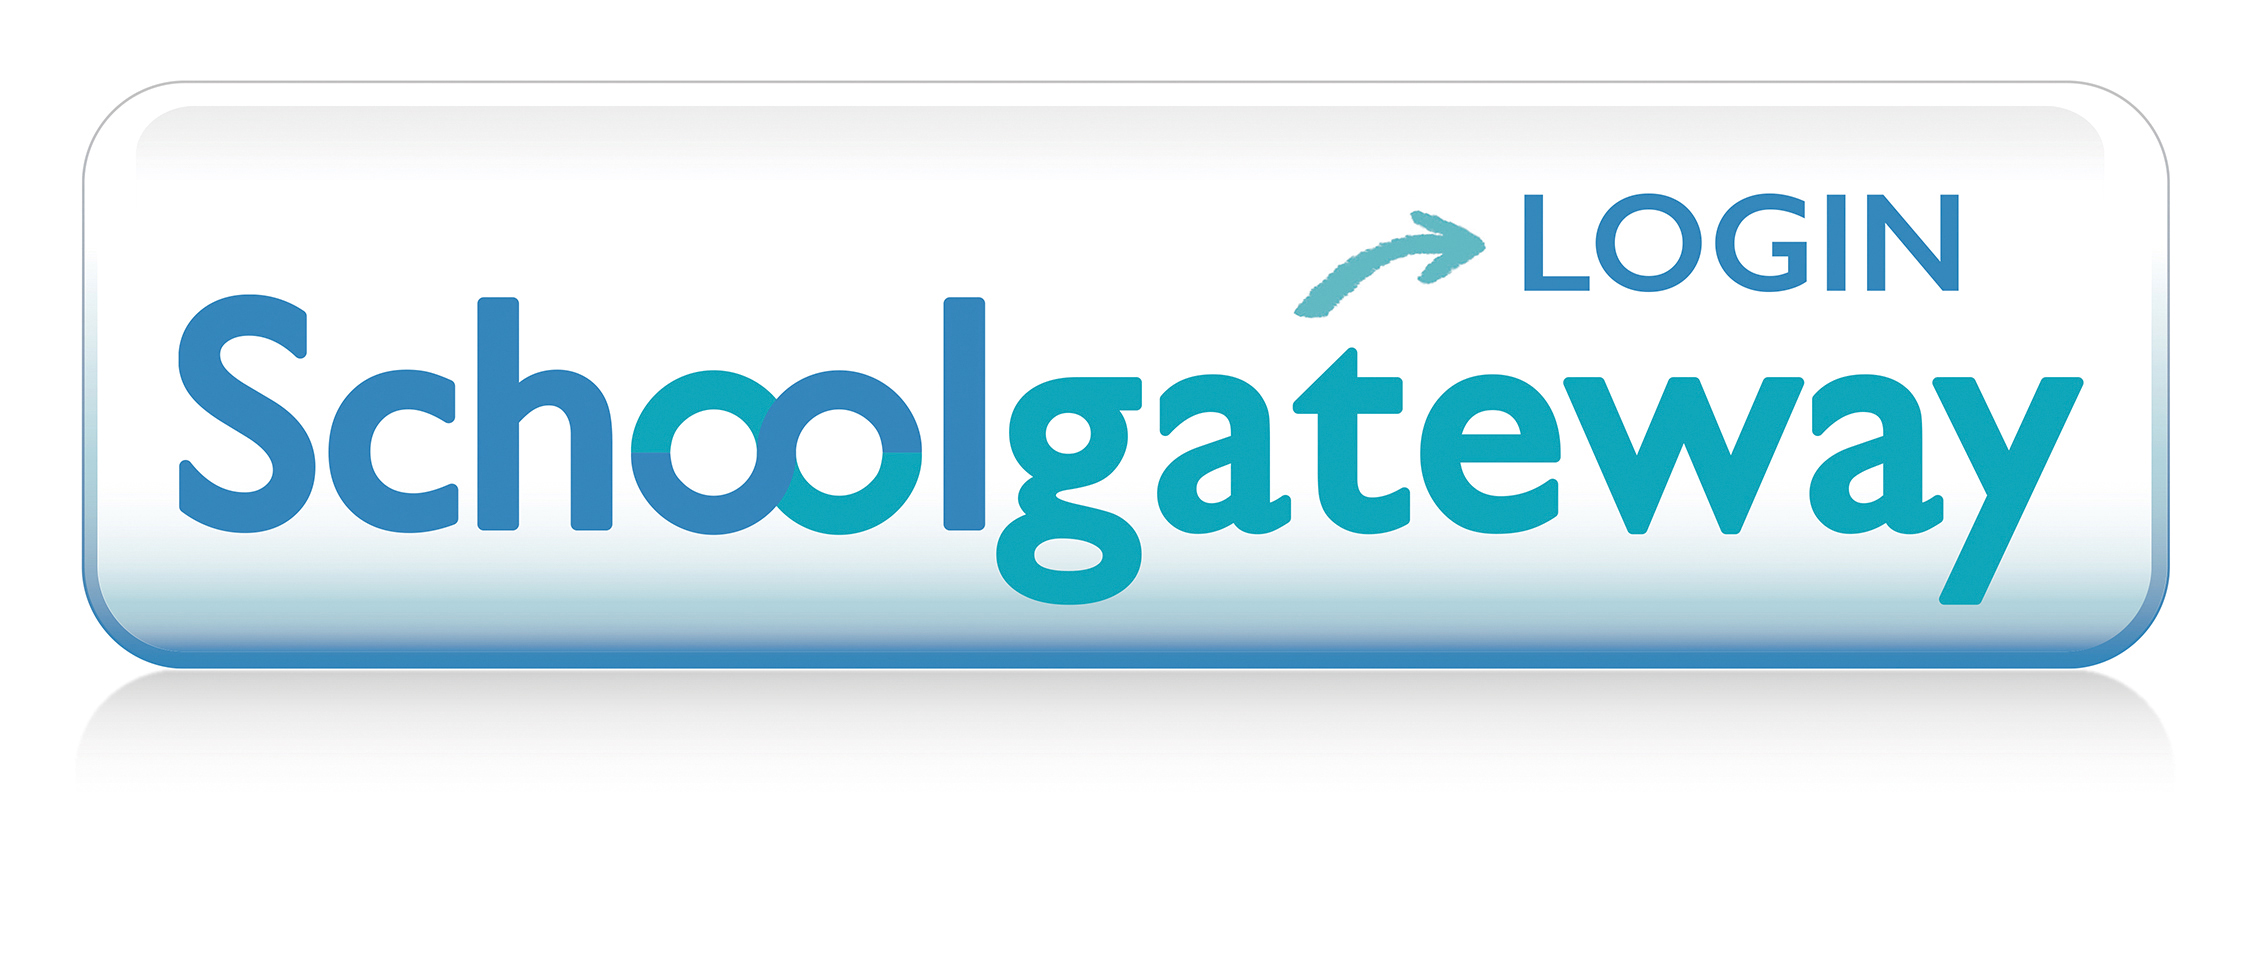 School Gateway login page